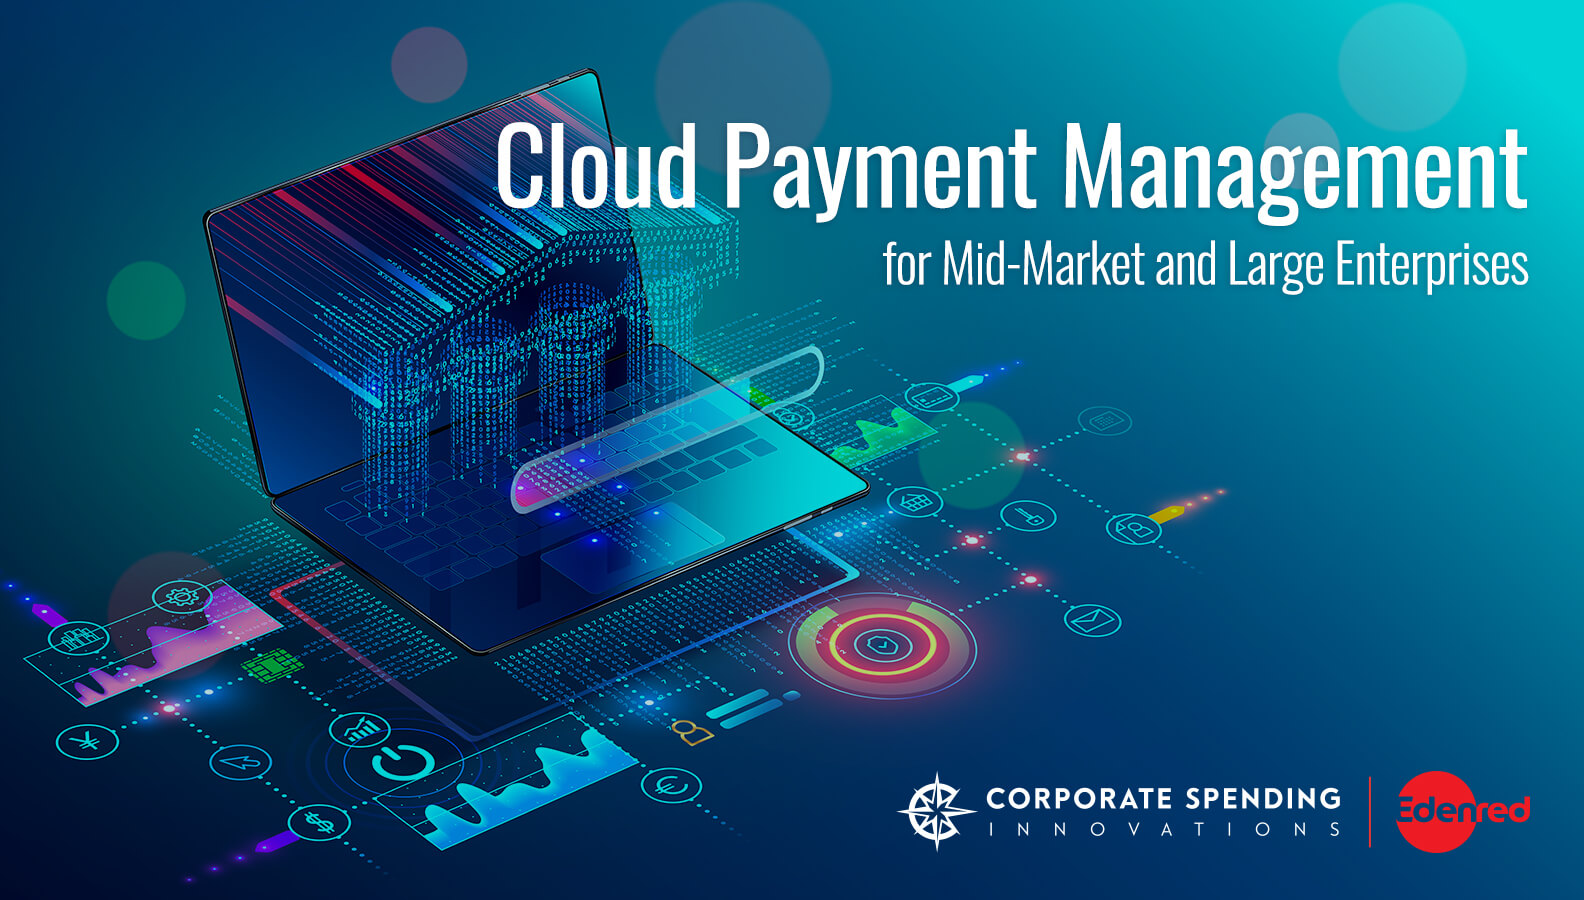 Cloud Payment Management for Mid-Market and Large Enterprises